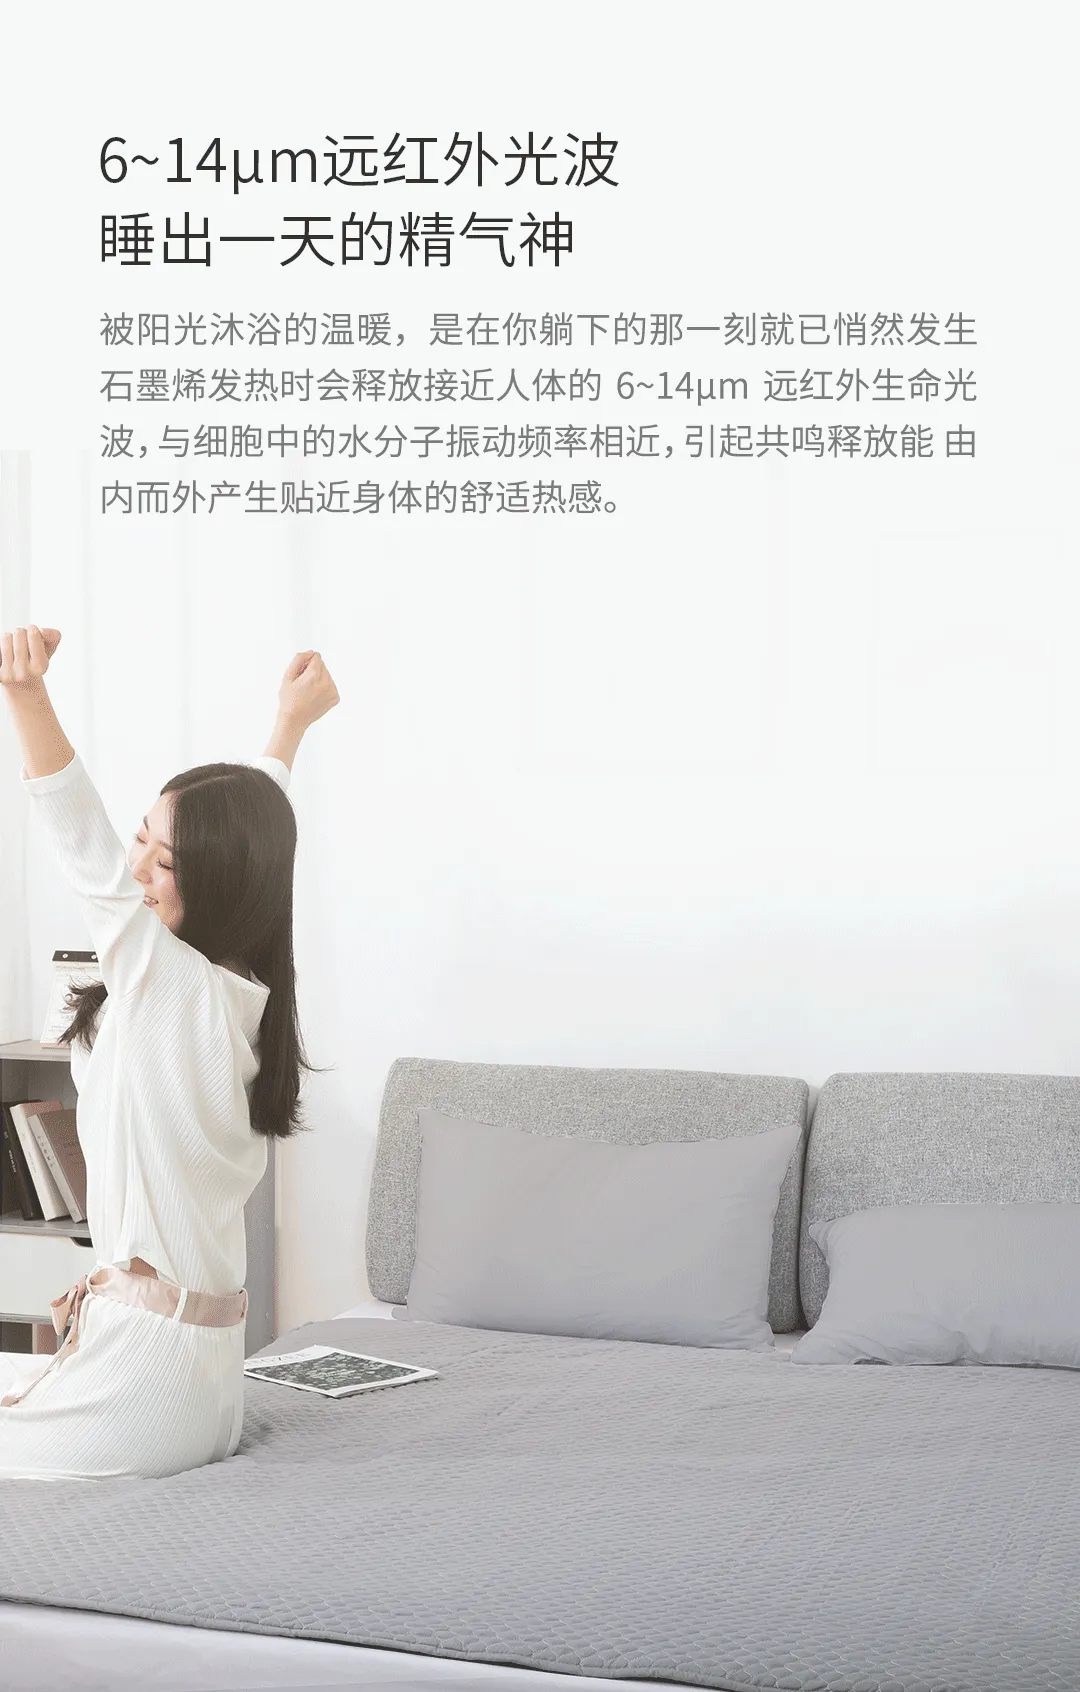 Xiaomi випустила розумну електричну ковдру